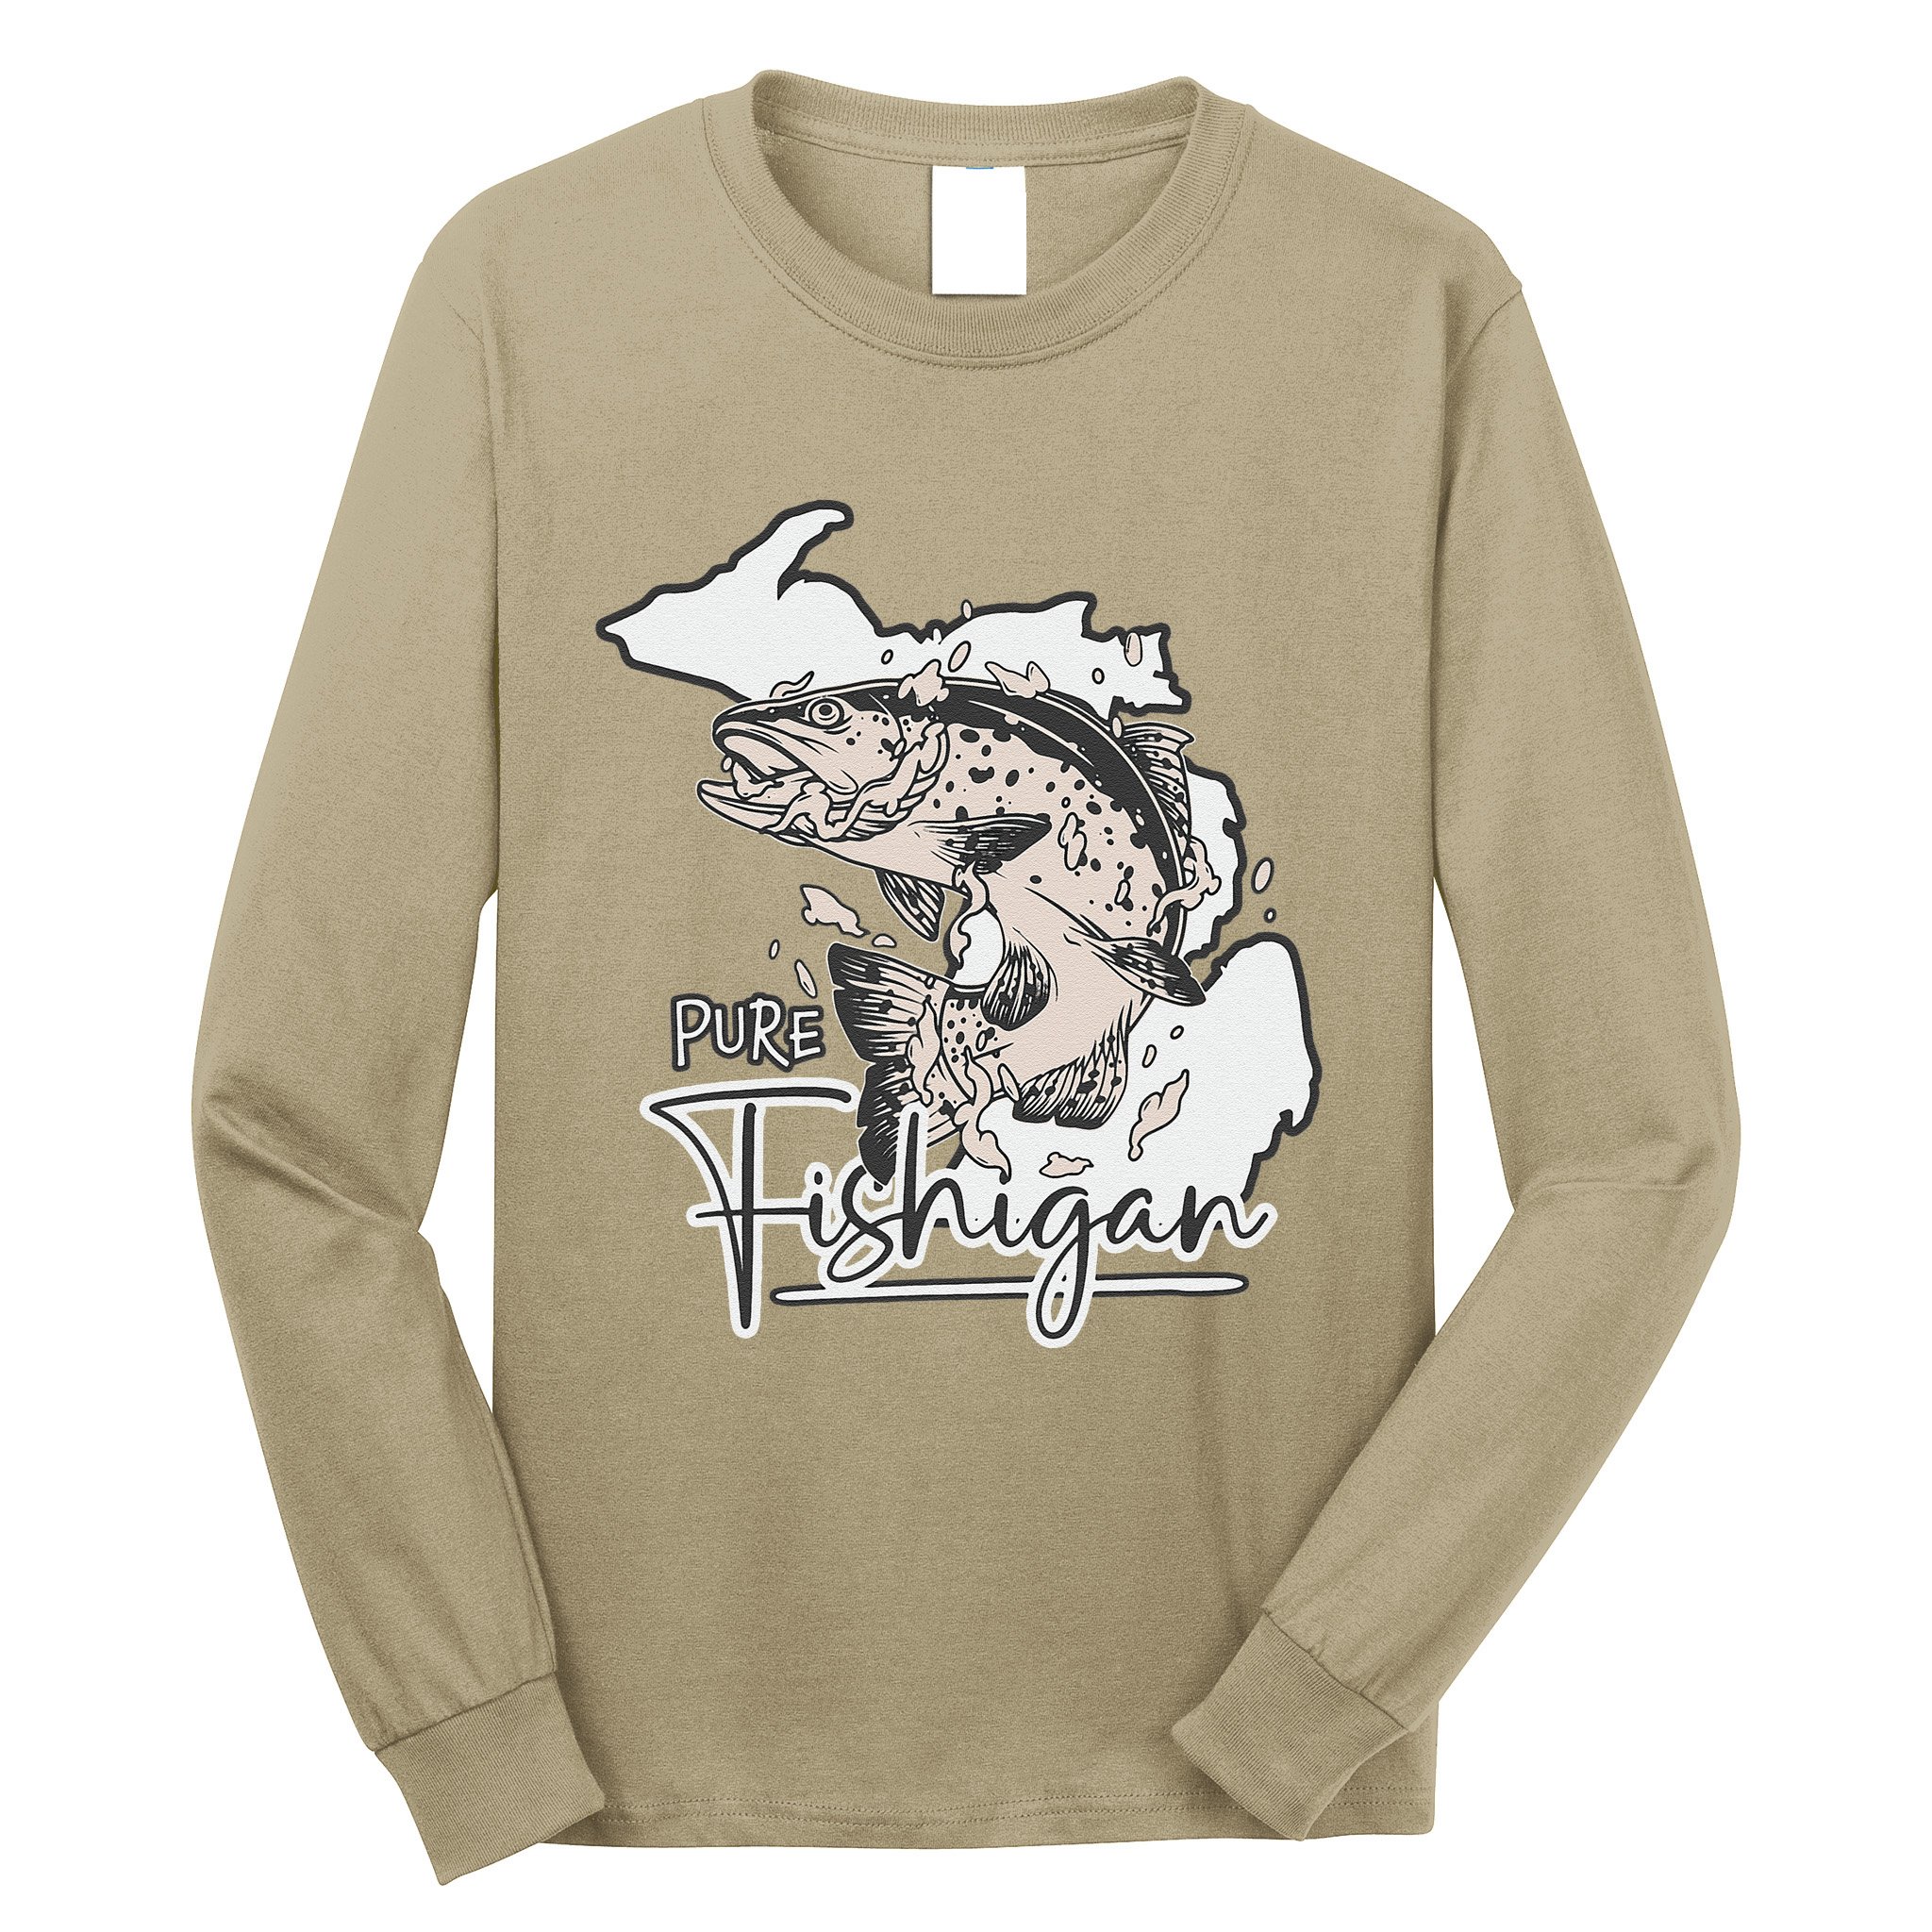 Michigan Funny Fishigan Fishing Lover Long Sleeve TShirt Men Women